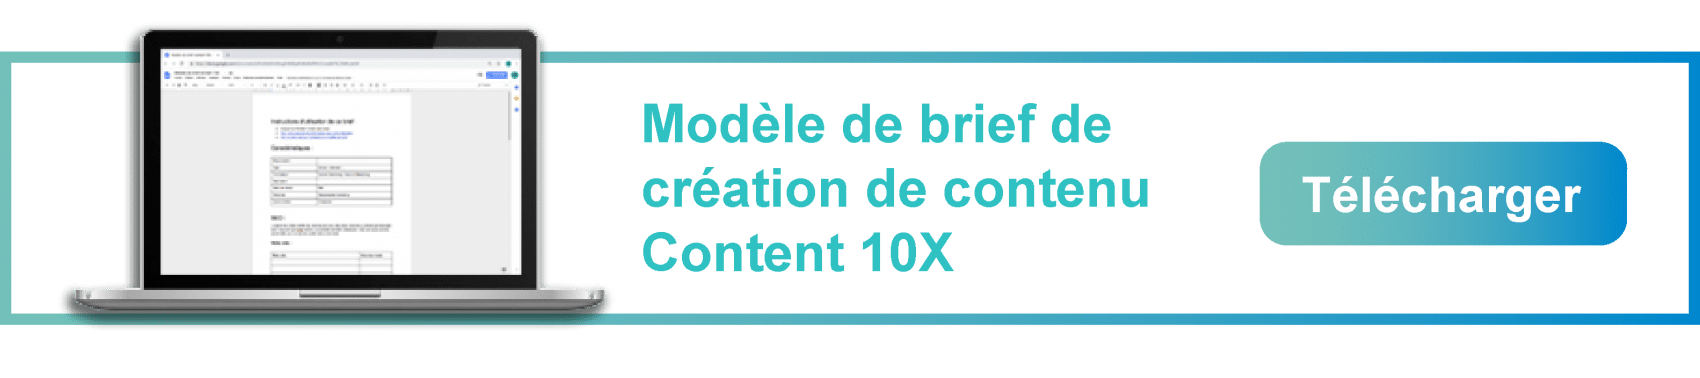 Télécharger le modèle de brief éditorial contenus 10x